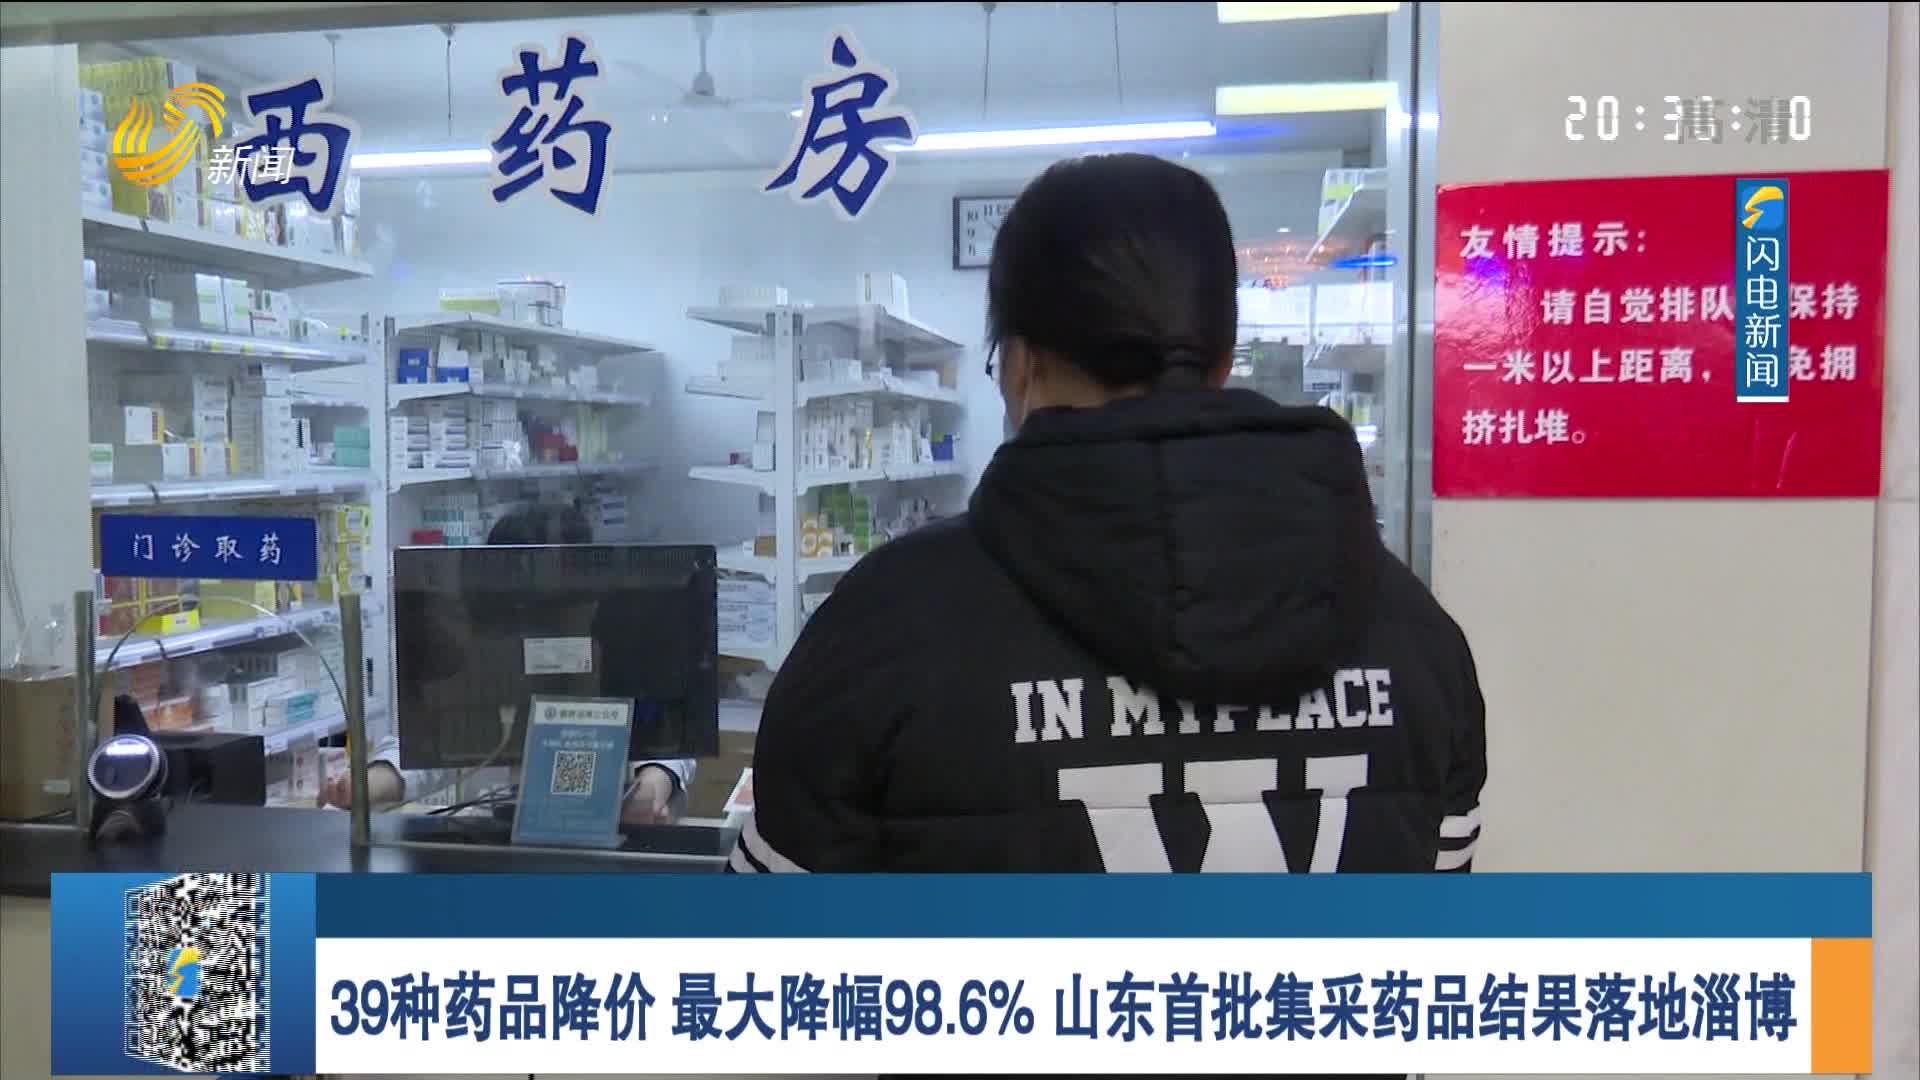 39种药品降价 最大降幅98.6% 山东首批集采药品结果落地淄博